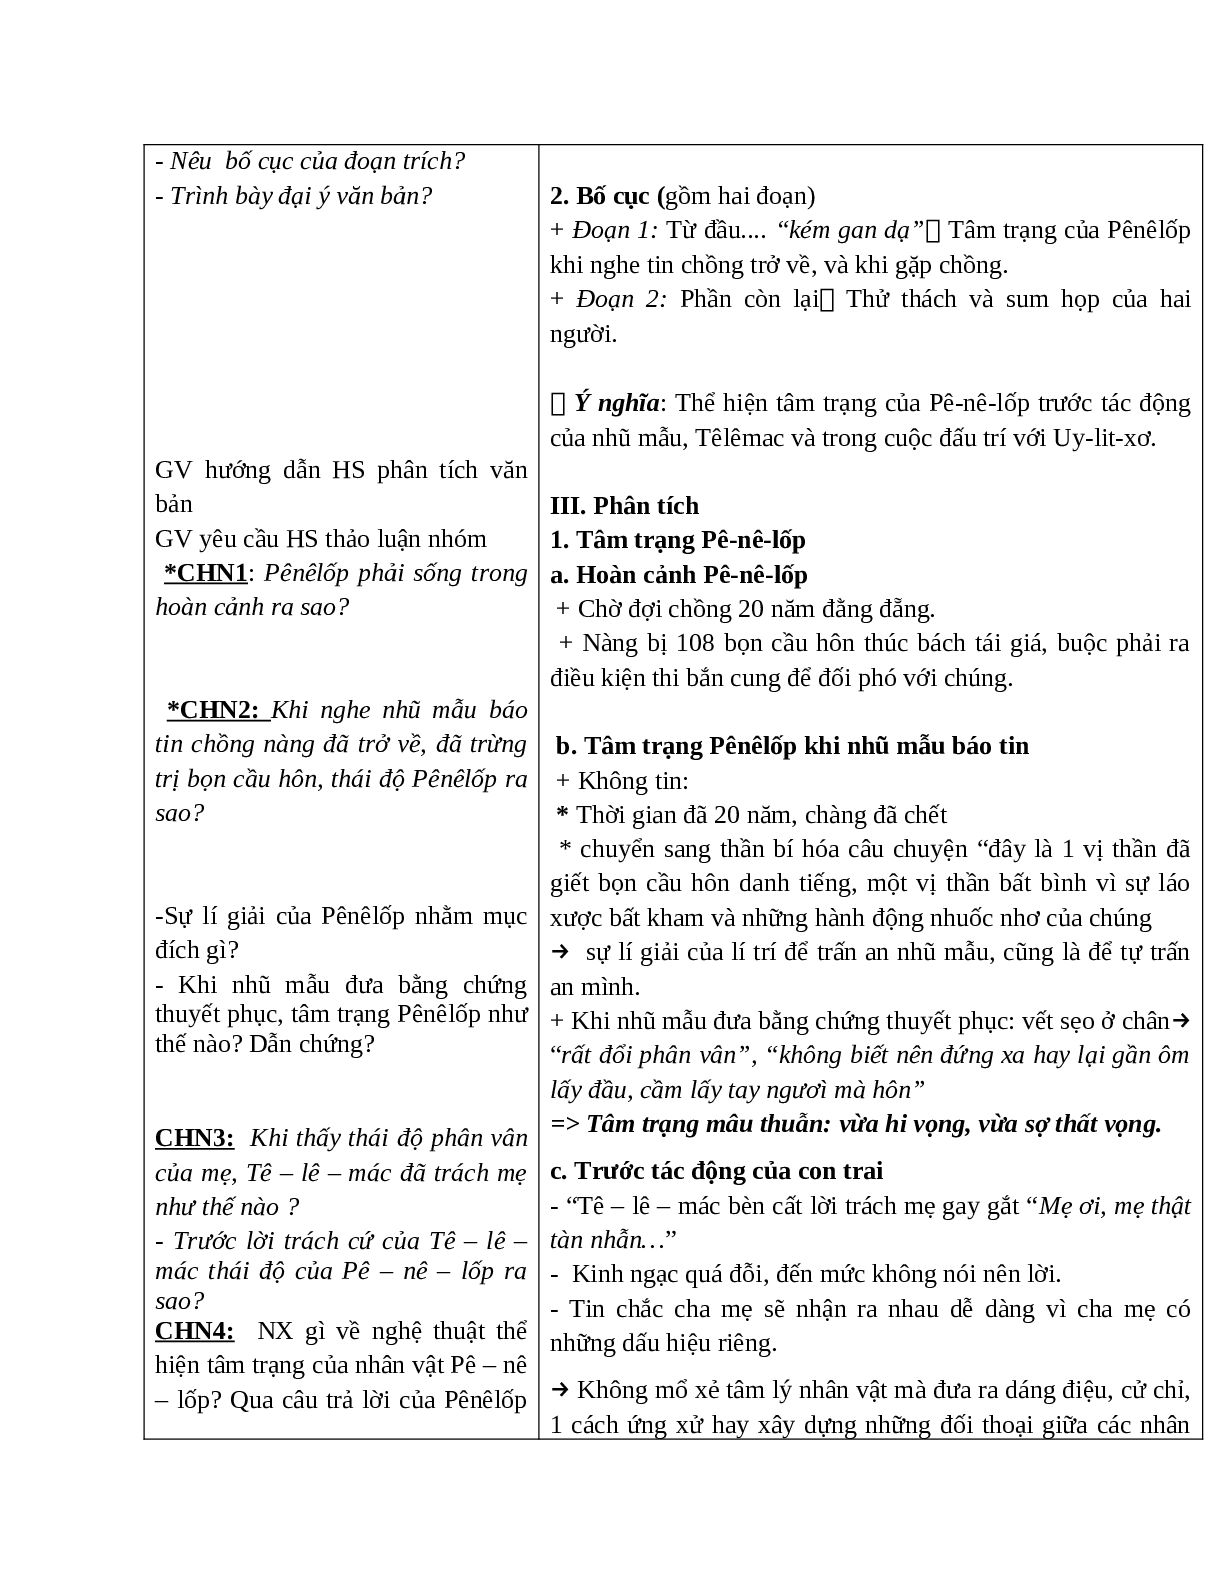 Giáo án Ngữ văn 10, tập 1, bài Uy-lít-xơ trở về (Tiết 1) mới nhất (trang 3)